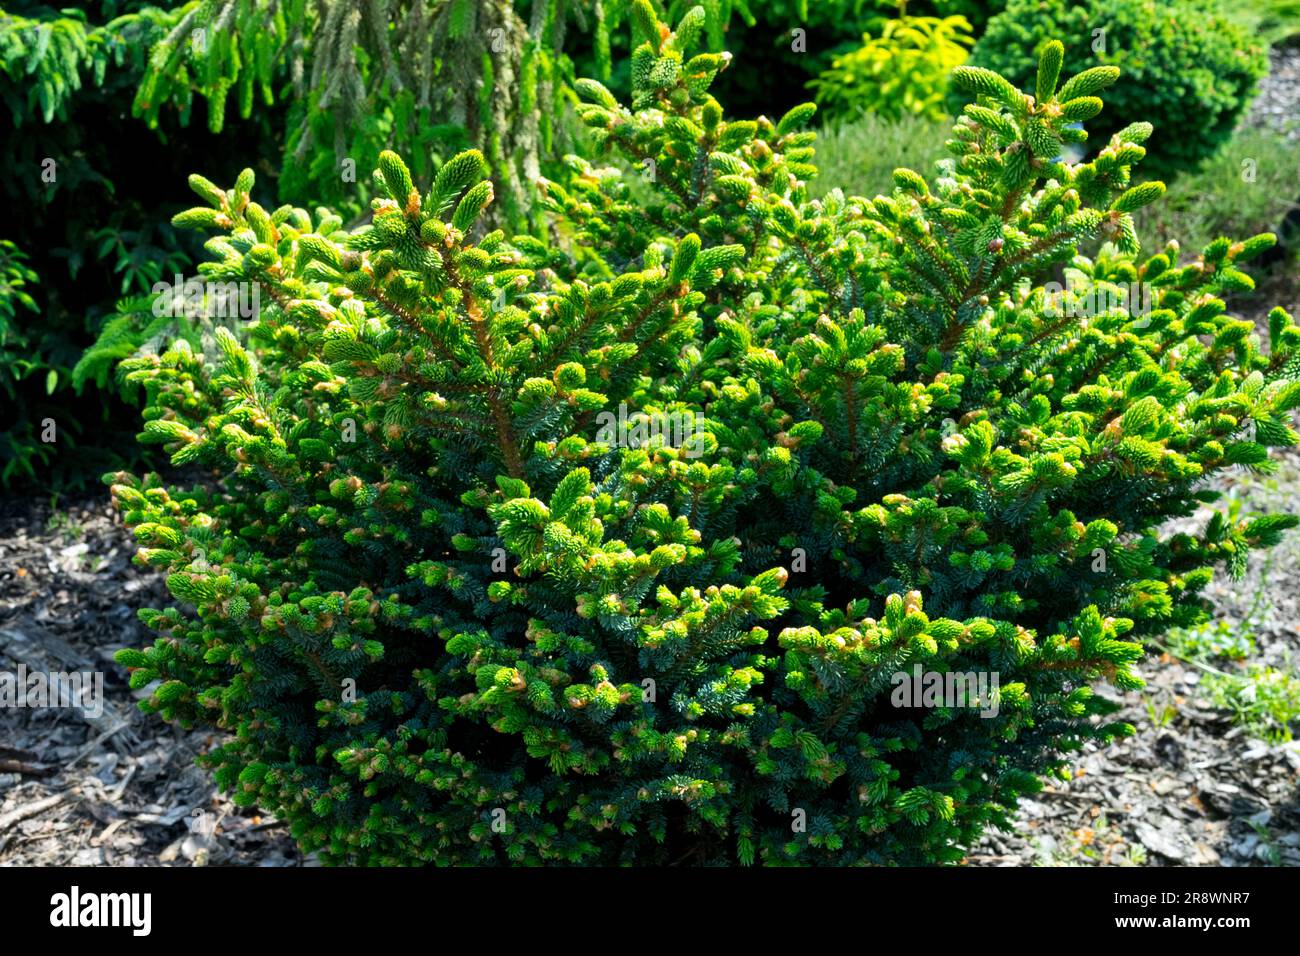 Épinette de Yezo, Picea jezoensis 'Marl chinois' épinette de Hondo plante compacte à croissance lente dans un jardin Banque D'Images